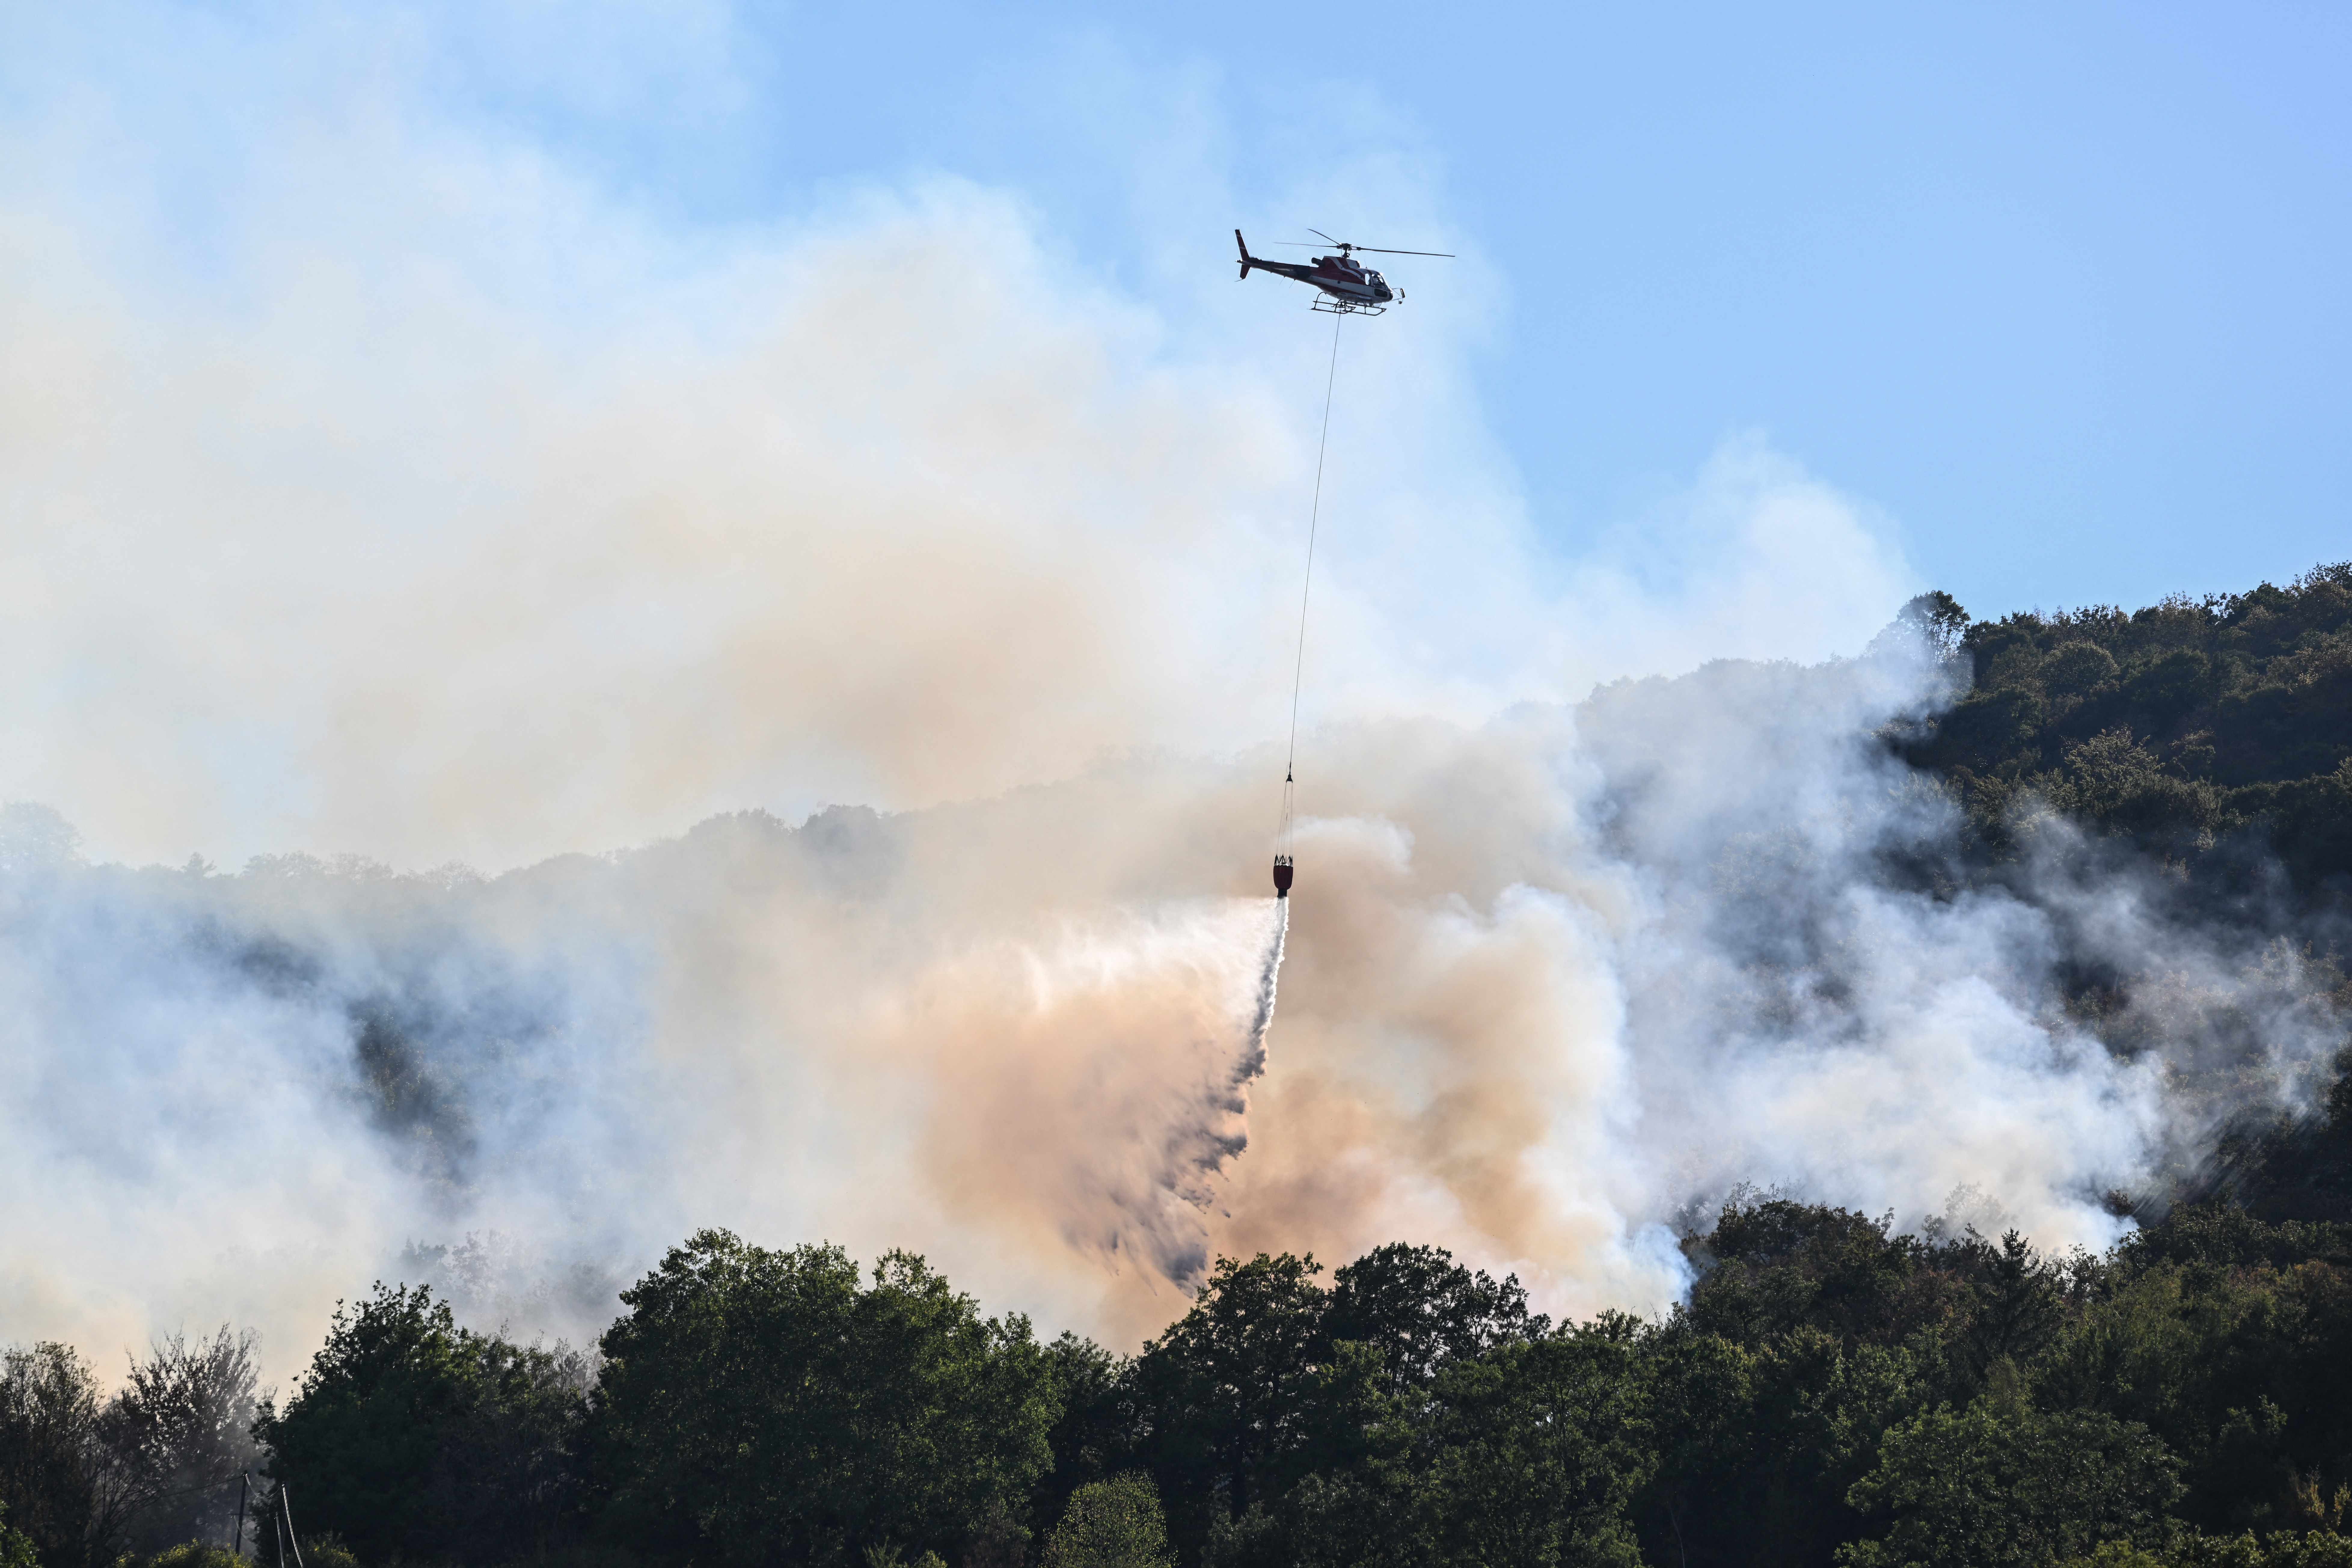 Un hélicoptère largue de l'eau sur des arbres lors d'un incendie près de Cernon, dans le Jura, le 11 août 2022. AFP/Jean-Philippe Ksiazek